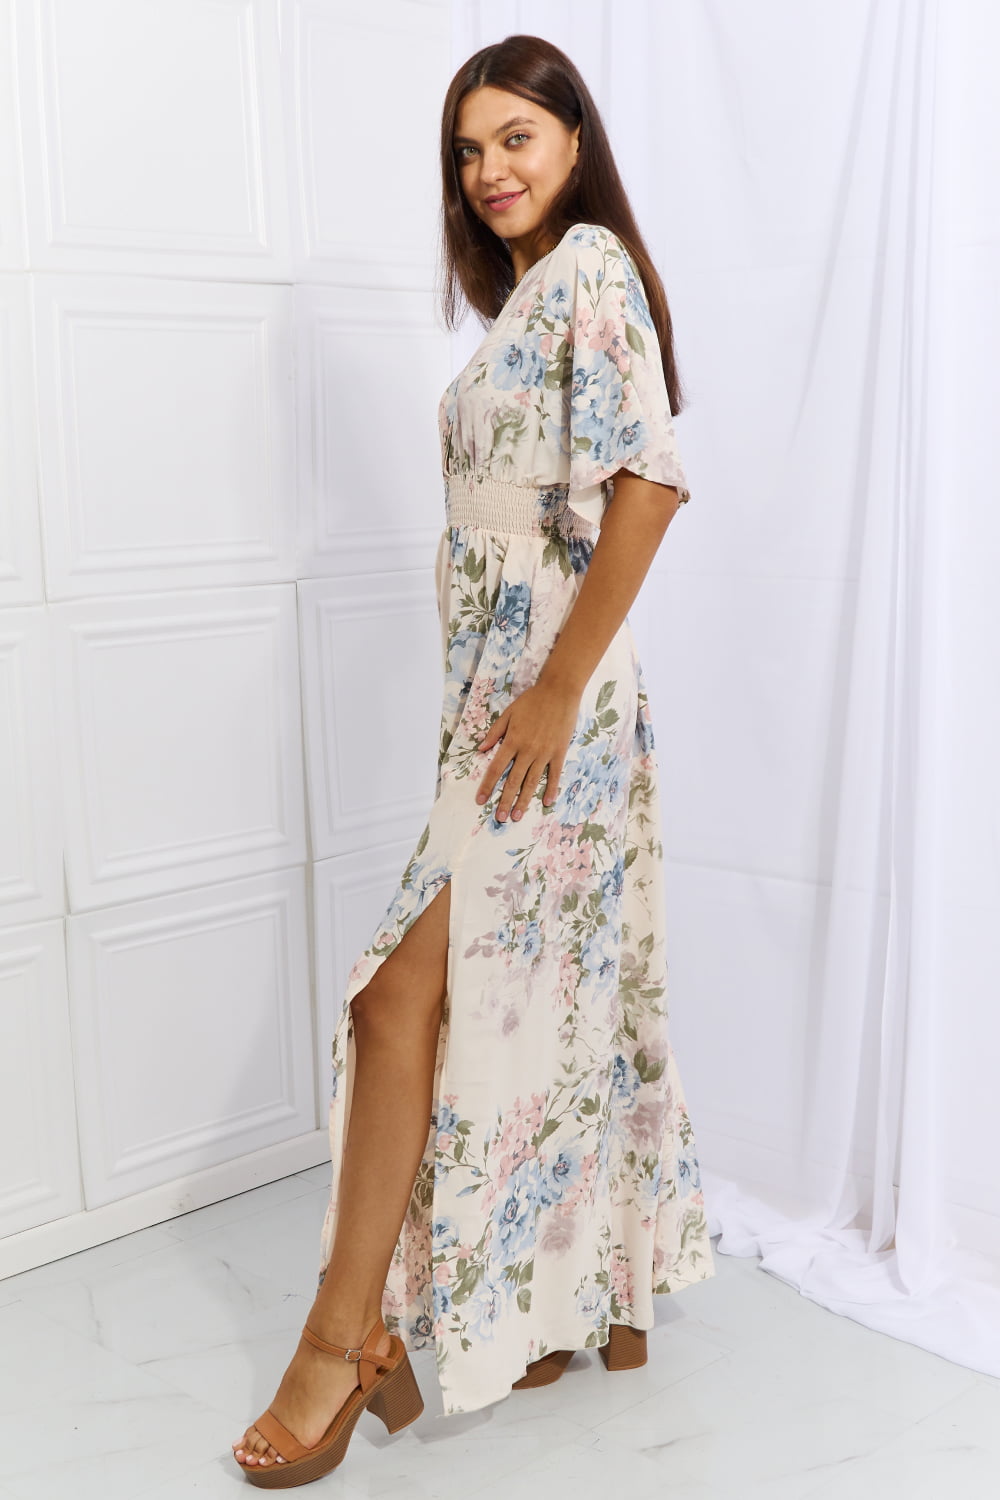 Classy Elegant Floral Maxi Dress